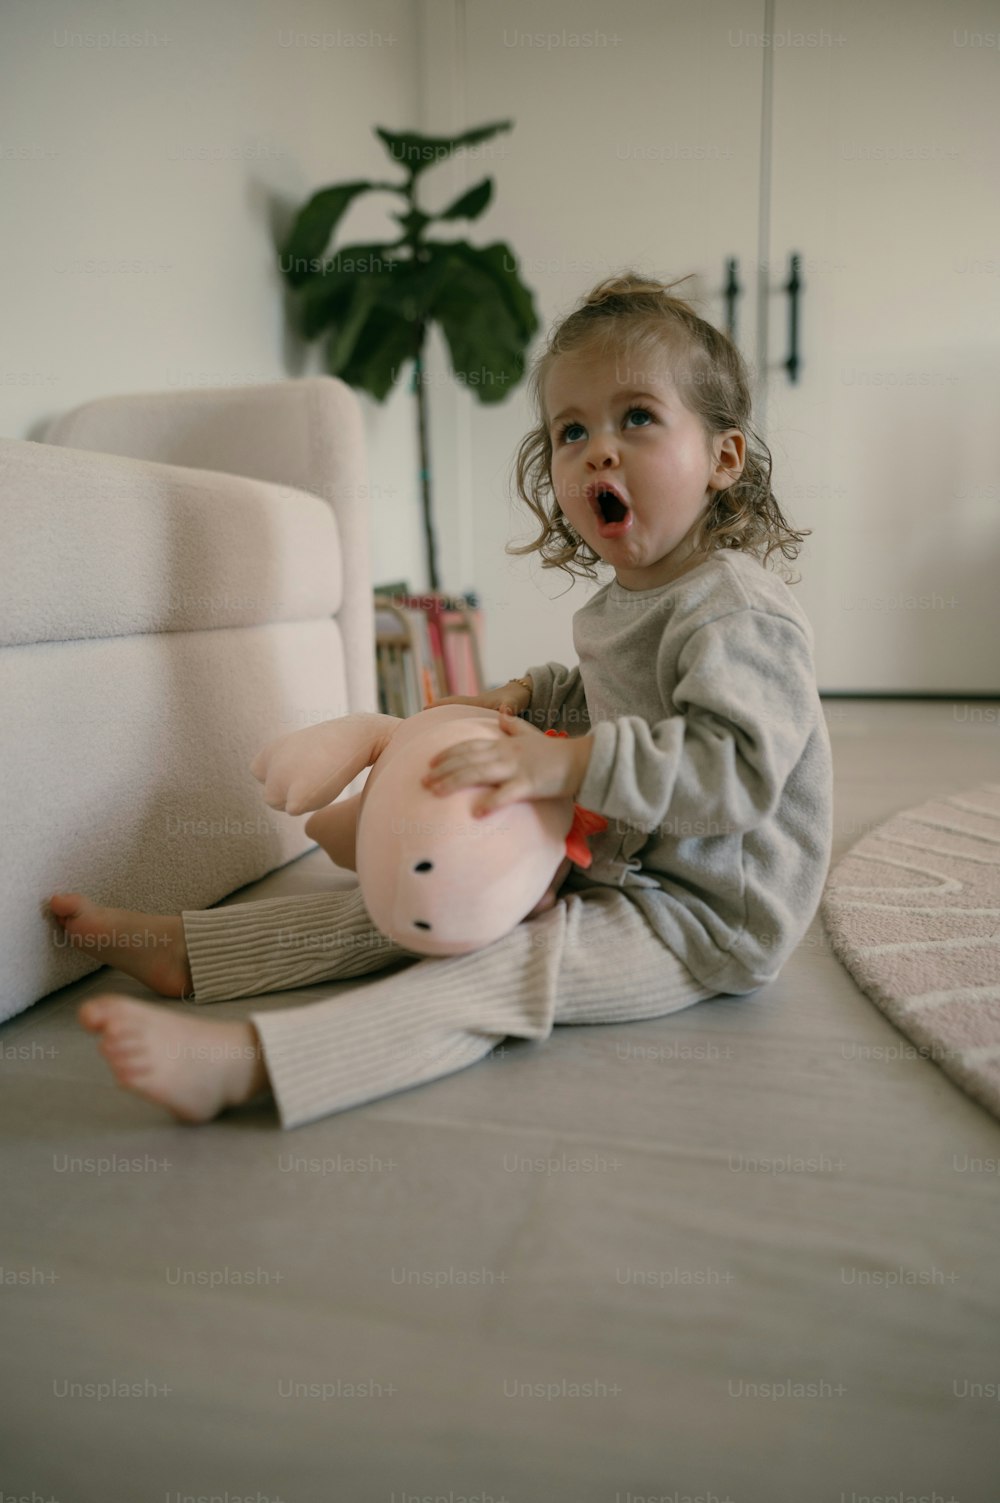 Una niña sentada en el suelo jugando con un cerdo